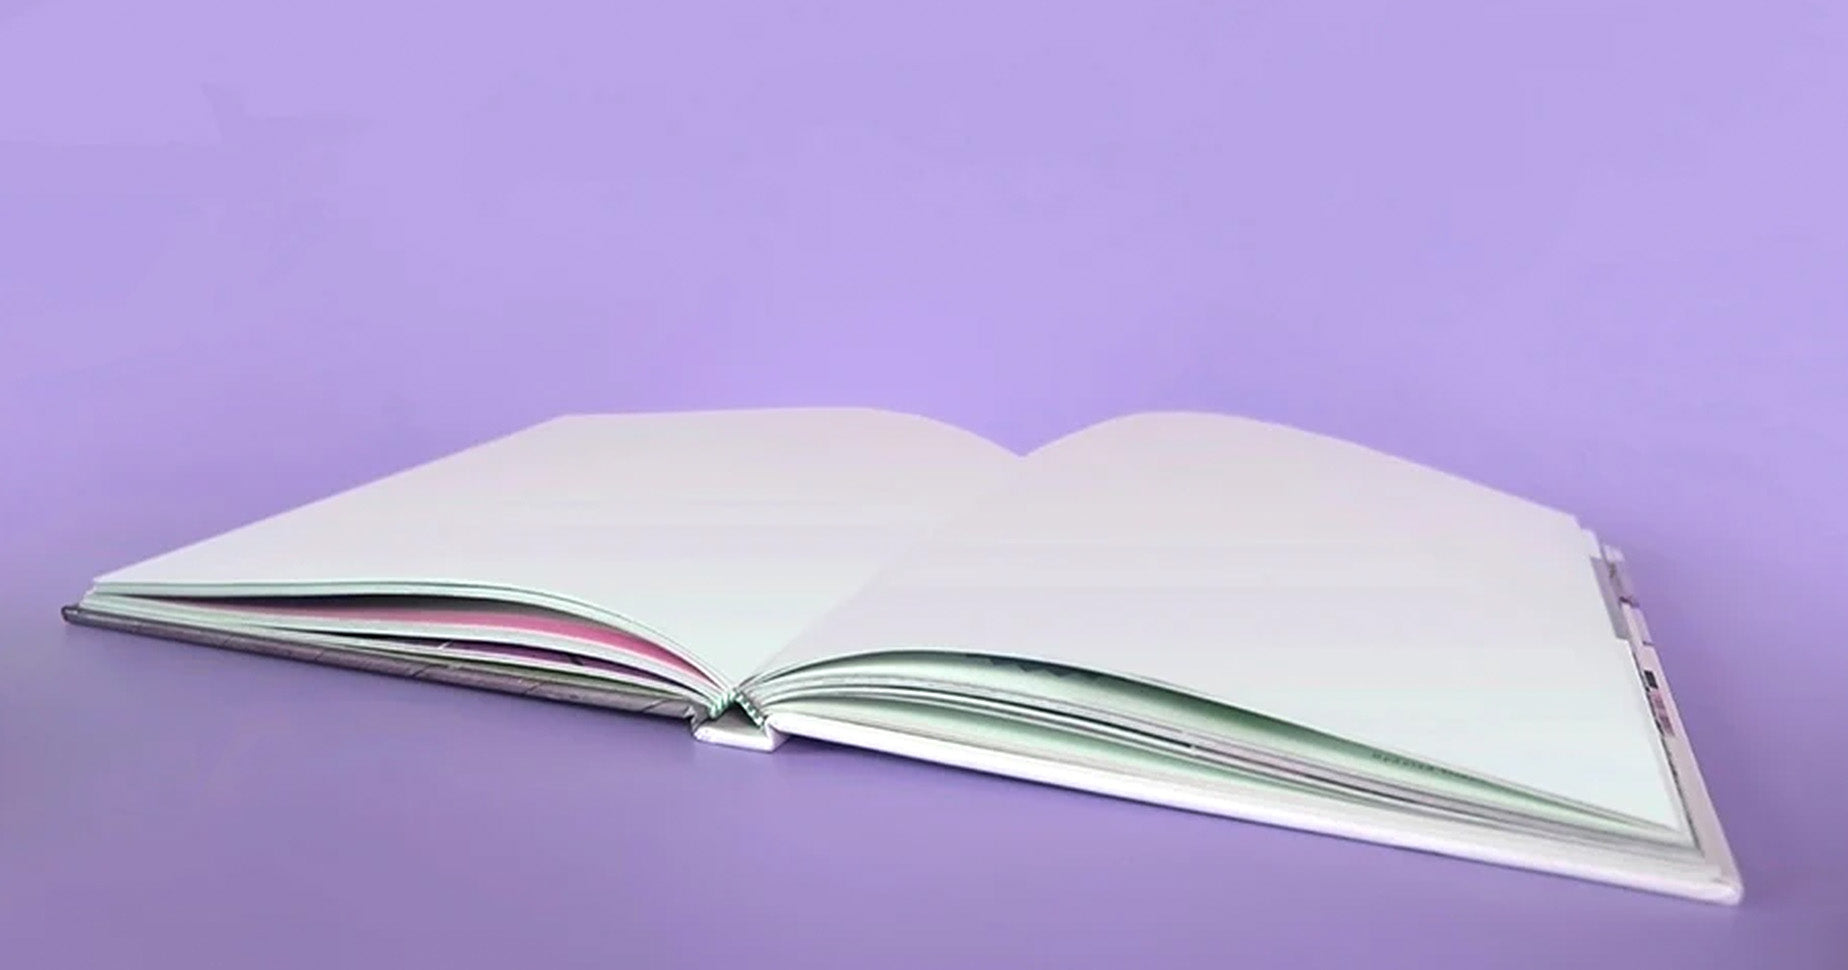 Ein aufgeklapptes Notizbuch vor einem lila Hintergrund.